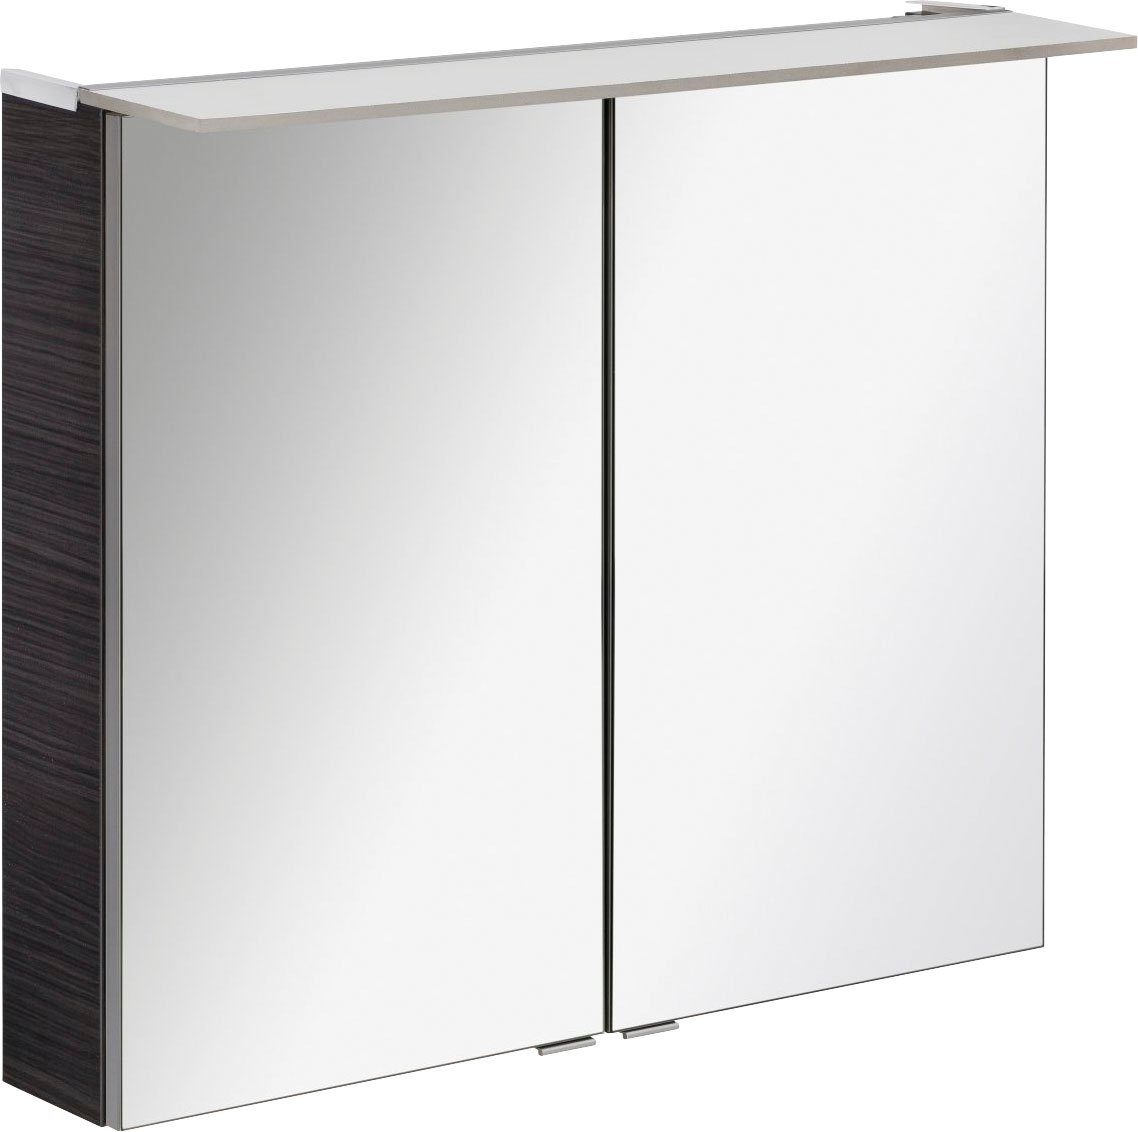 FACKELMANN Spiegelschrank PE 80 - Dark-Oak Badmöbel Breite 80 cm, 2 Türen, doppelseitig verspiegelt | Spiegelschränke